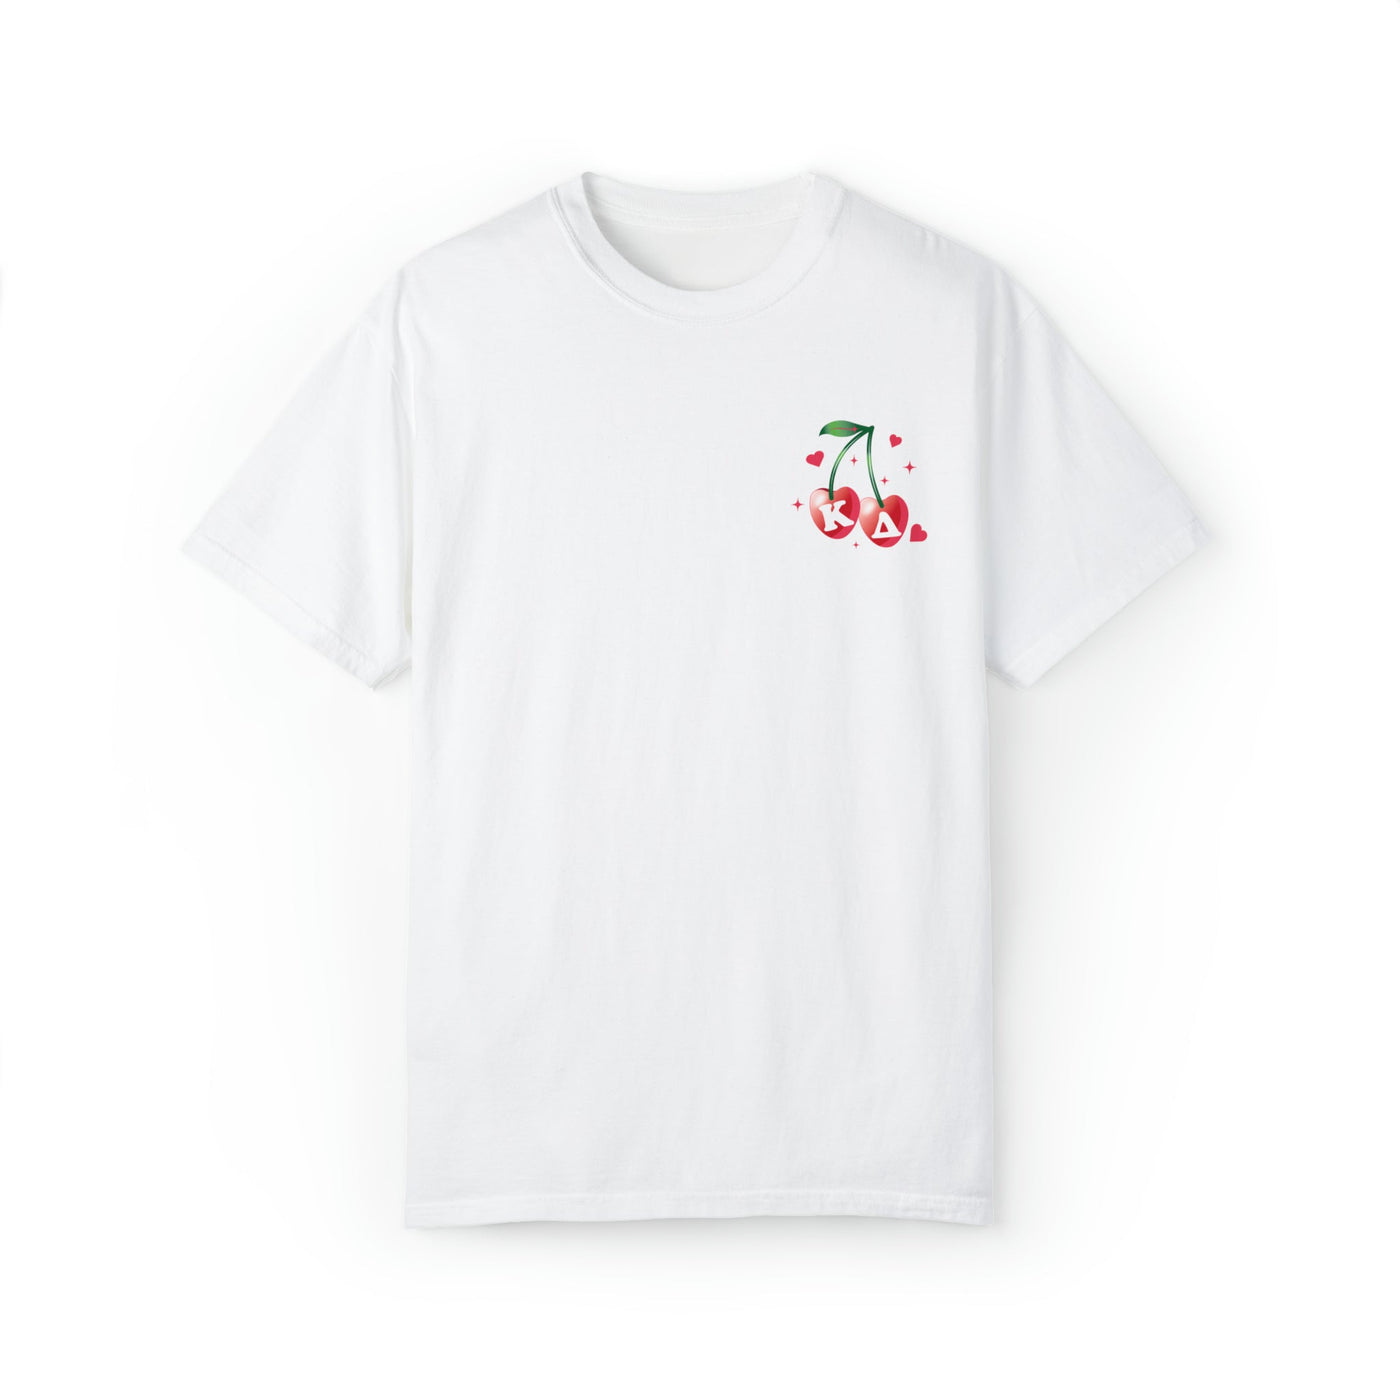 Kappa Delta Cherry Airbrush Sorority T-shirt